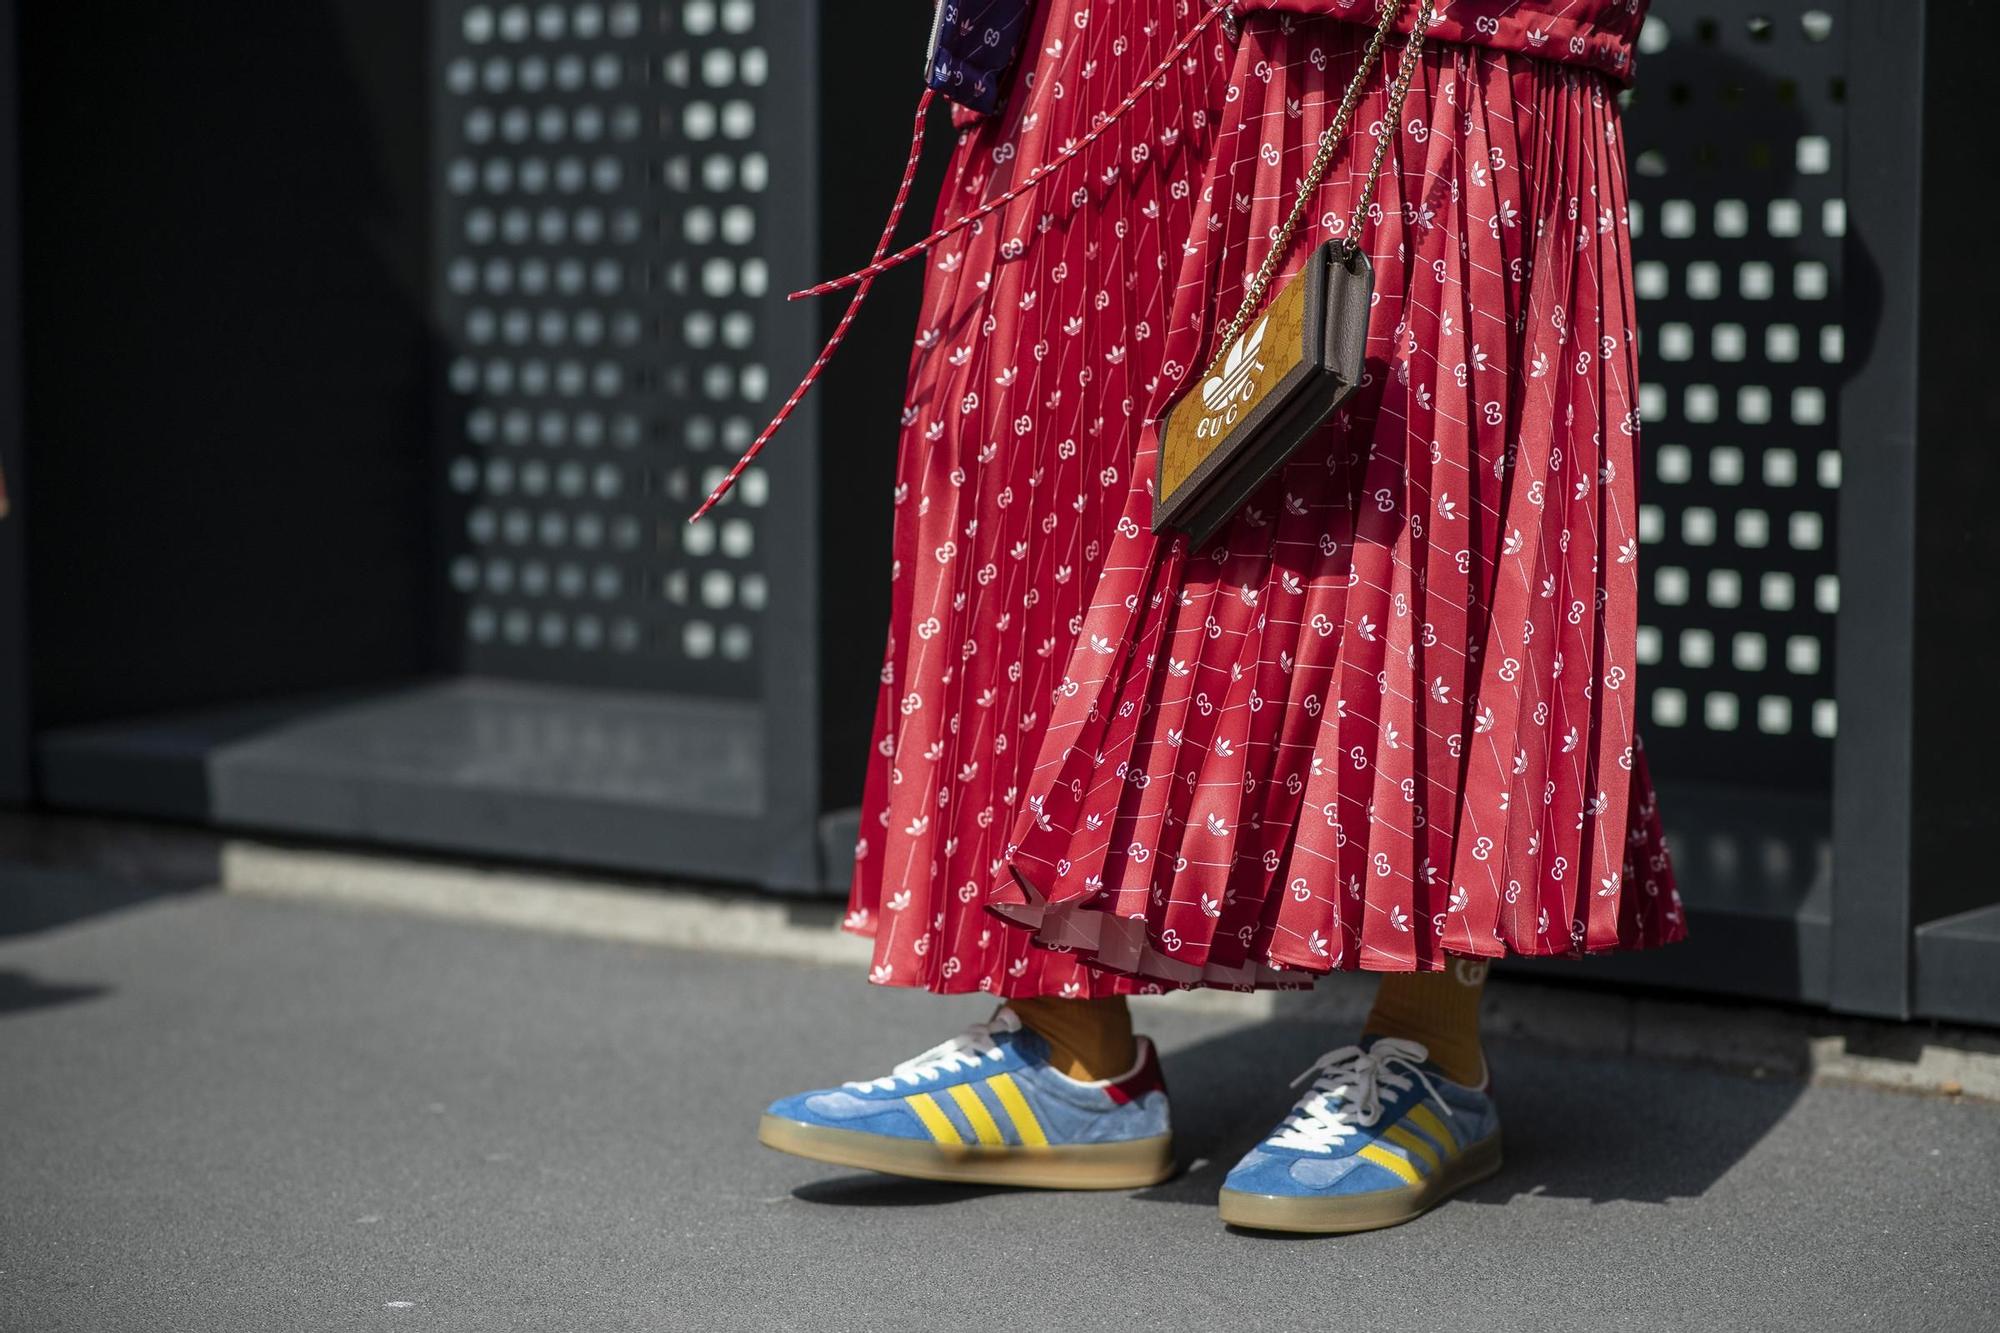 ZAPATILLAS ADIDAS OTOÑO | Así son las zapatillas Adidas de moda para este  otoño: cómodas y baratas